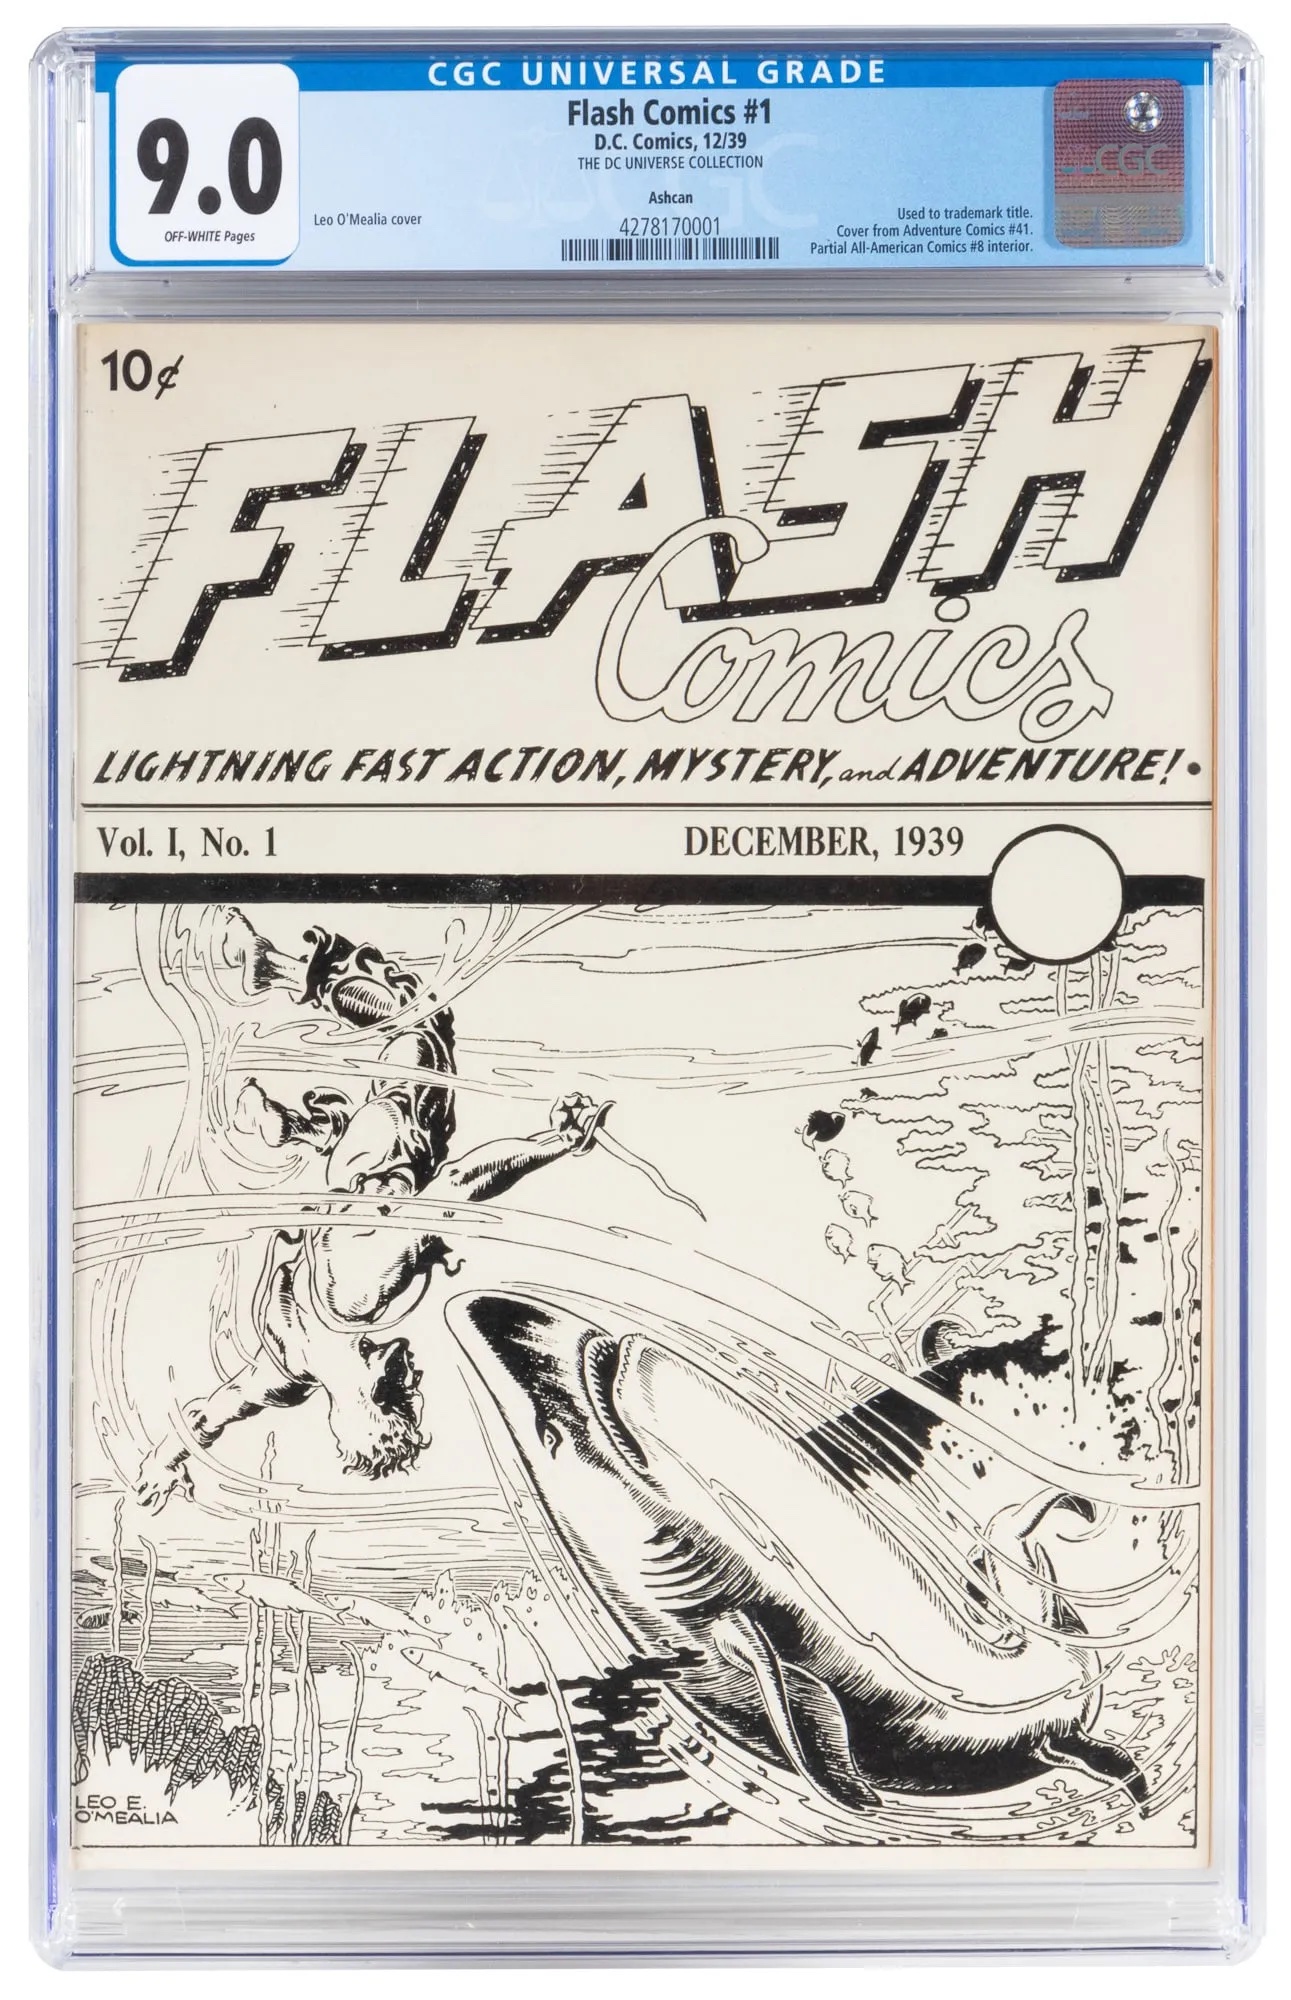 Flash Comics #1 ashcan edition, estimated at $20,000-$30,000 at PBA.